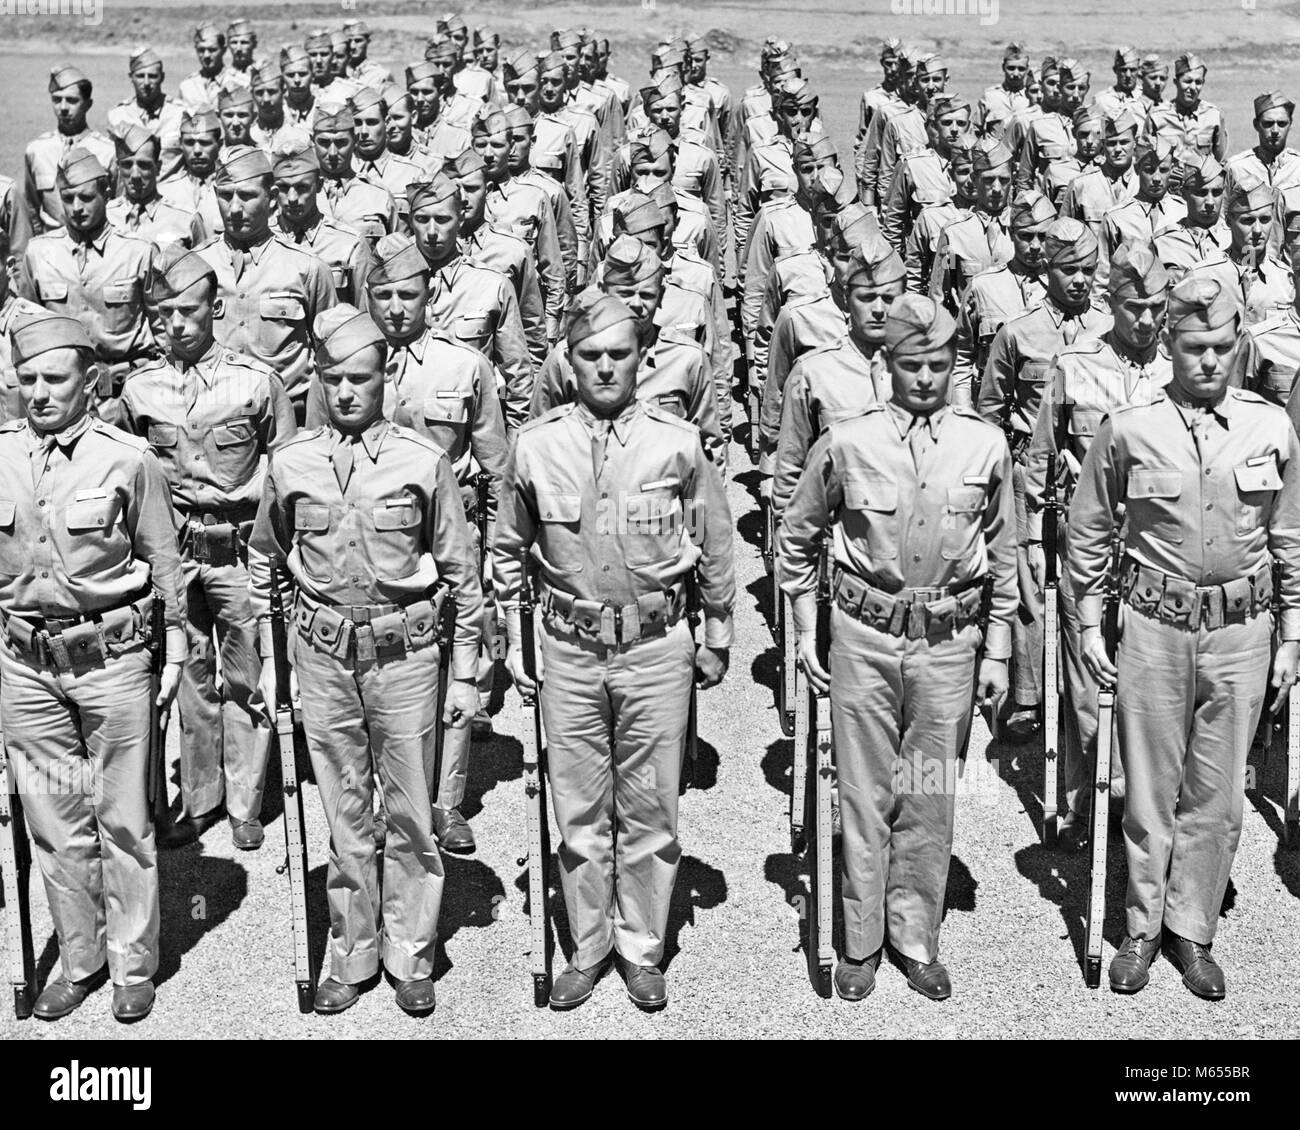 1940 LIGNES D'AMERICAN WORLD WAR II DEBOUT À L'ATTENTION DES SOLDATS AVEC DES FUSILS À LA CAMÉRA À UNE HAR2433 -001 GUERRE MONDIALE GUERRE MONDIALE HARS FORMATION Deux troupes rangées uniformes RIFLES GRAND GROUPE DE GENS D'ARMES À FEU ARMES À FEU MI-HOMMES KAKI ARMES MAN YOUNG ADULT MAN B&W NOIR ET BLANC PORTRAIT DE L'ORIGINE ETHNIQUE À L'appareil photo à l'ANCIENNE AU PROFESSIONS PERSONNES PAR GRADE GRADE ET DE RECRUES DE RÉGIMENT DE FICHIER Banque D'Images